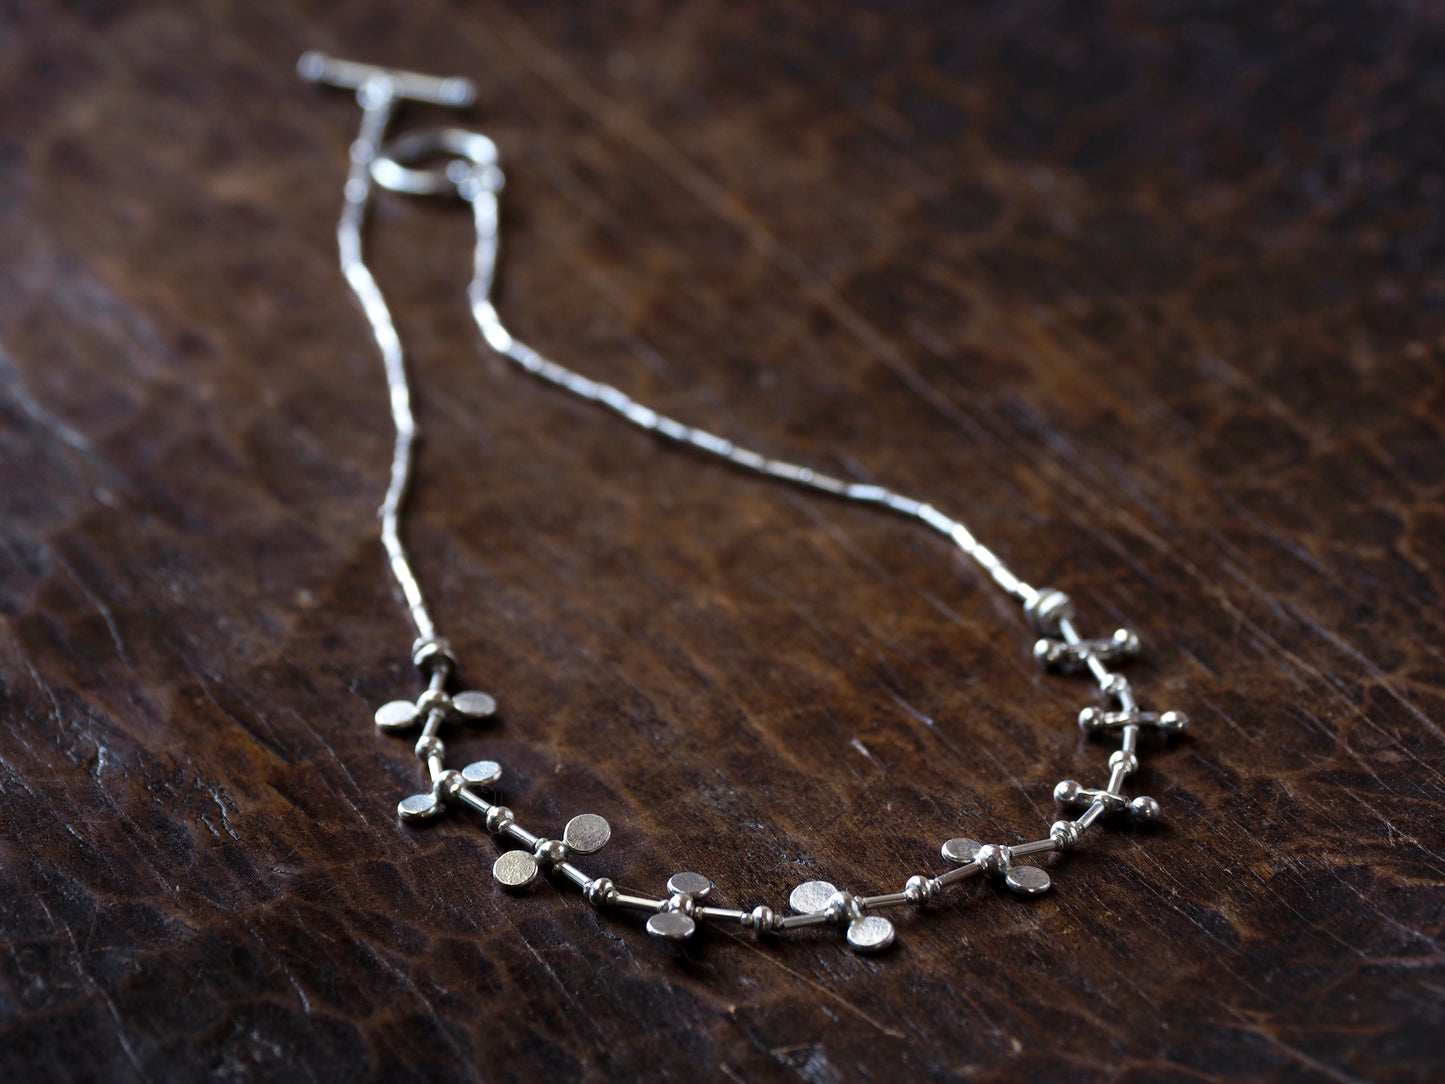 Silver 'BIB' necklace